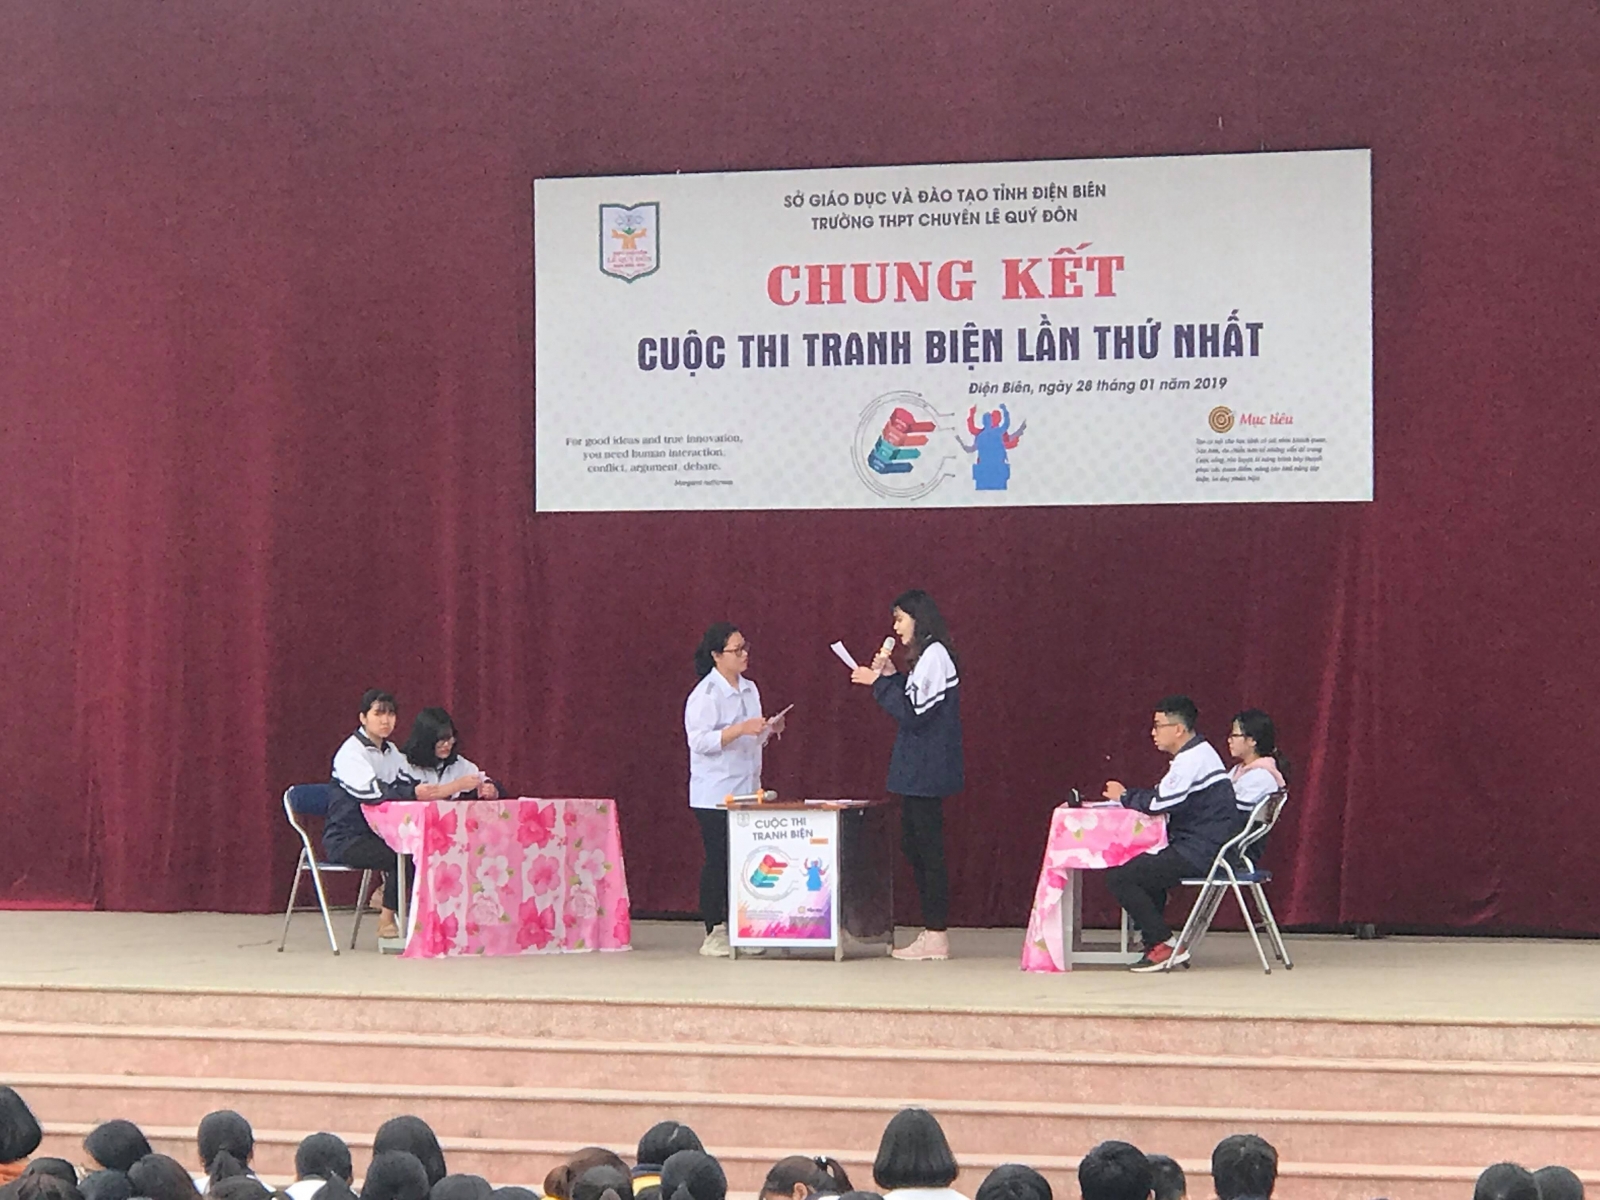 Trường THPT Chuyên Lê Quý Đôn - điểm sáng phong trào dạy và học ở Điện Biên - Ảnh minh hoạ 4